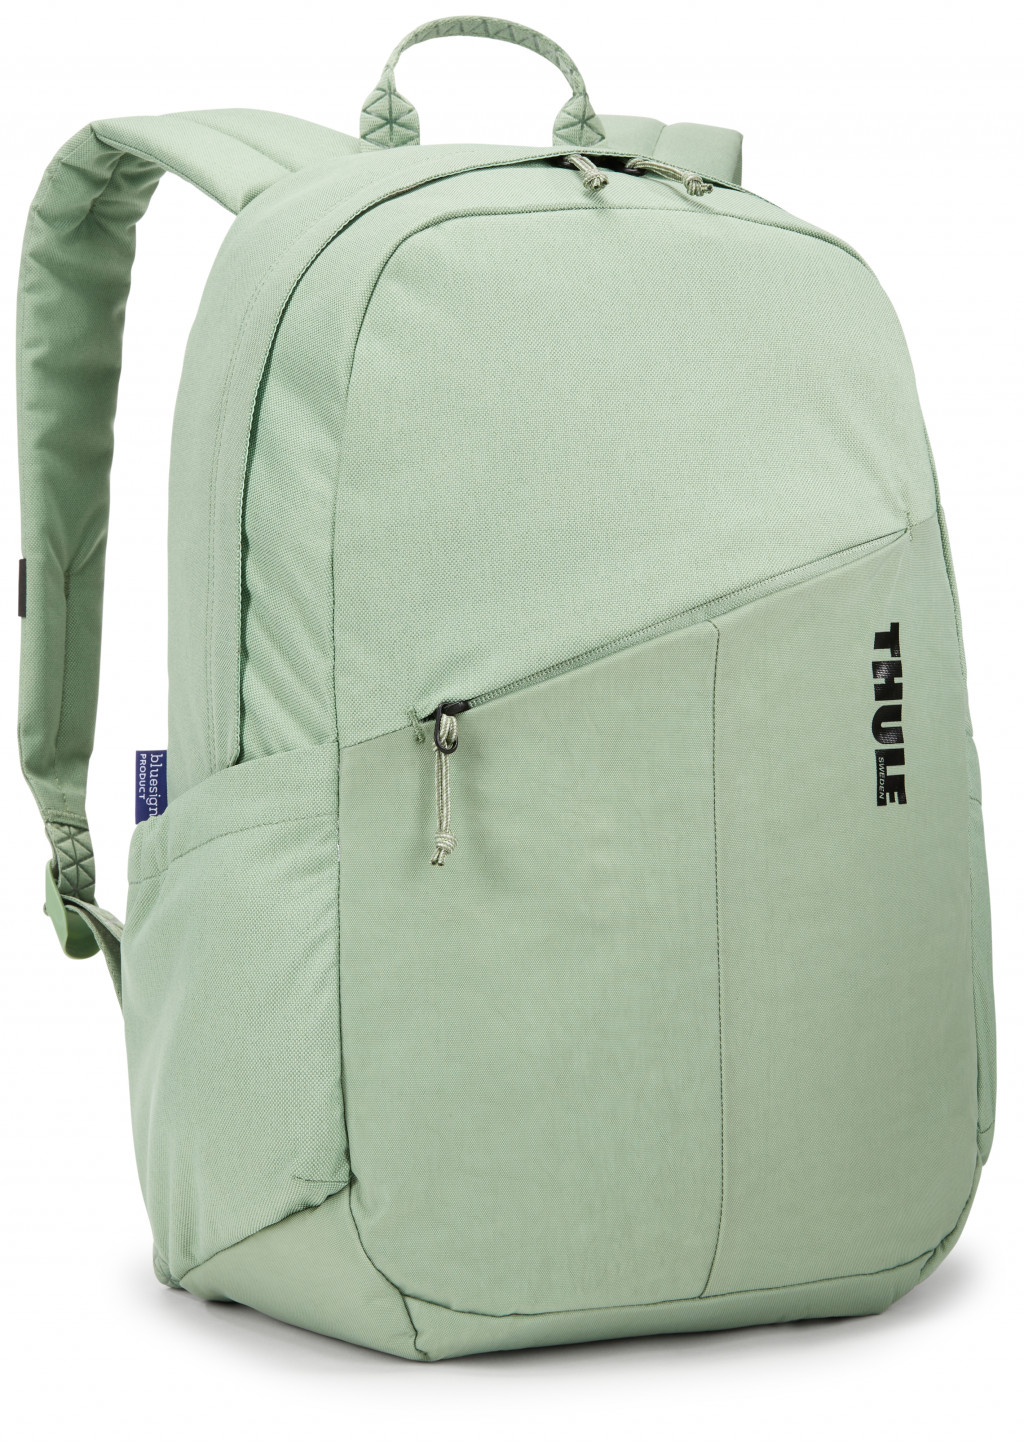 THULE TCAM6115 BASIL GREEN Backpack 20L